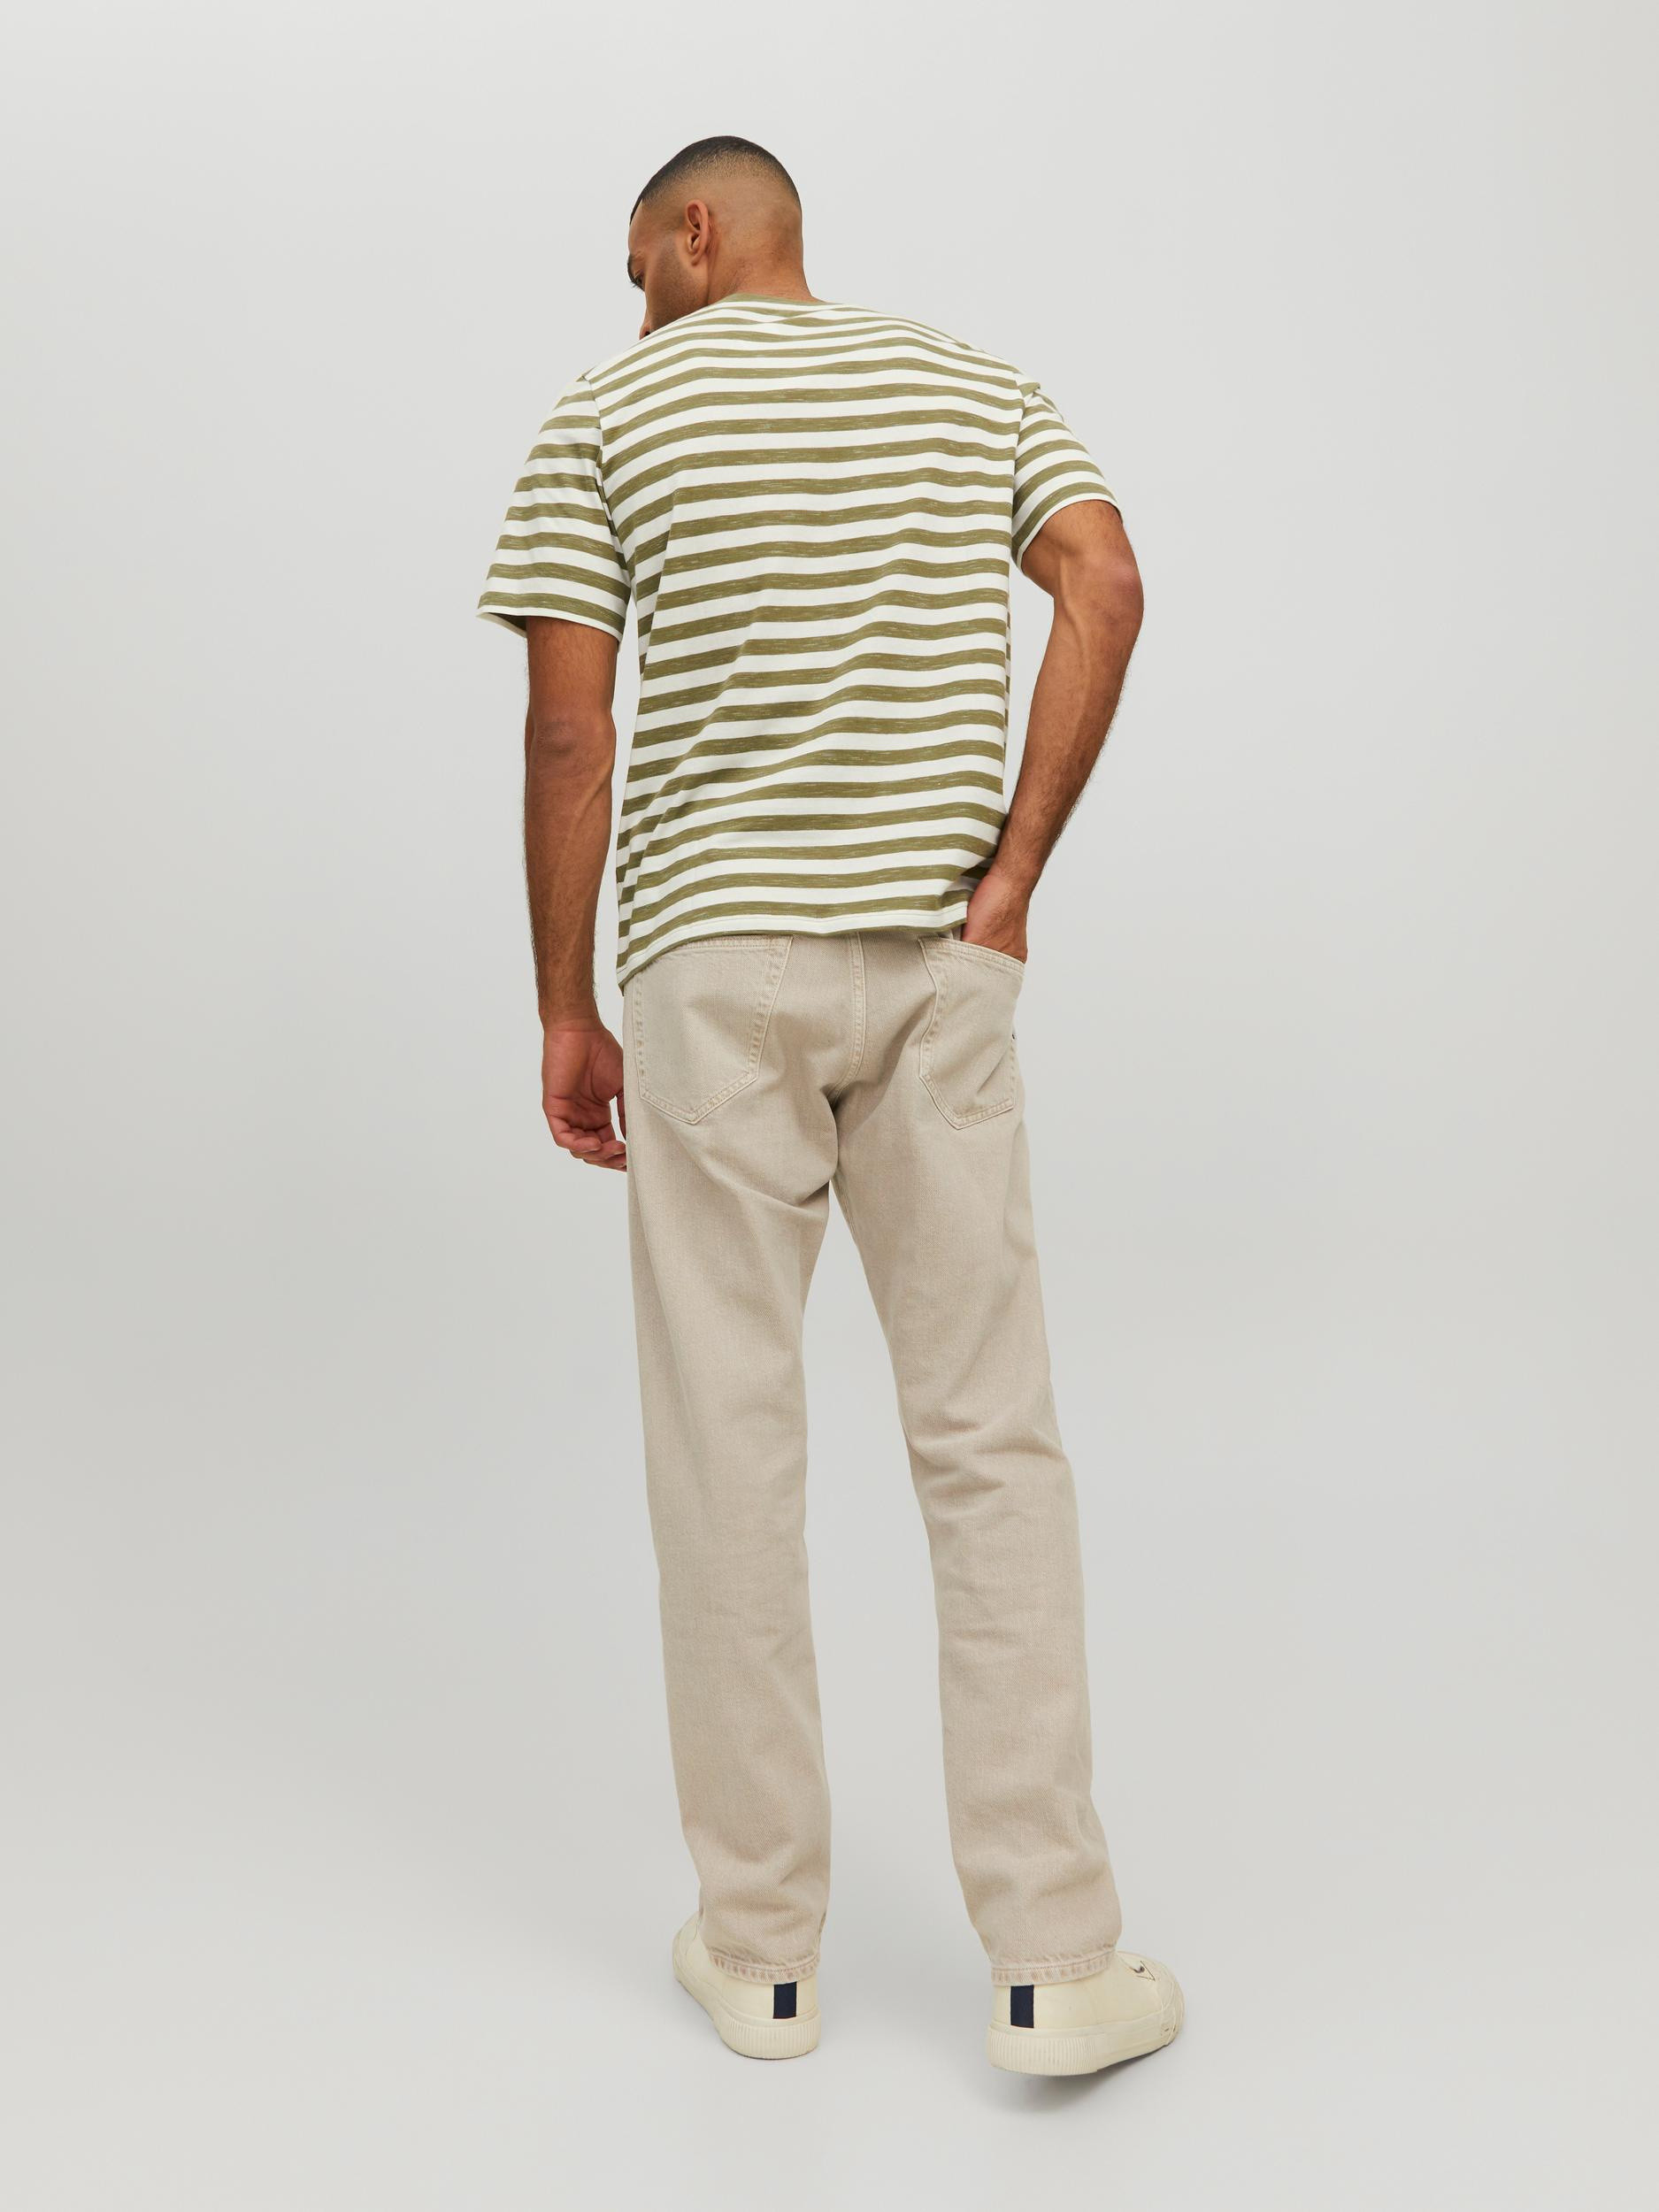 Jack & Jones - Striped T-Shirt, Light Green, large image number 5